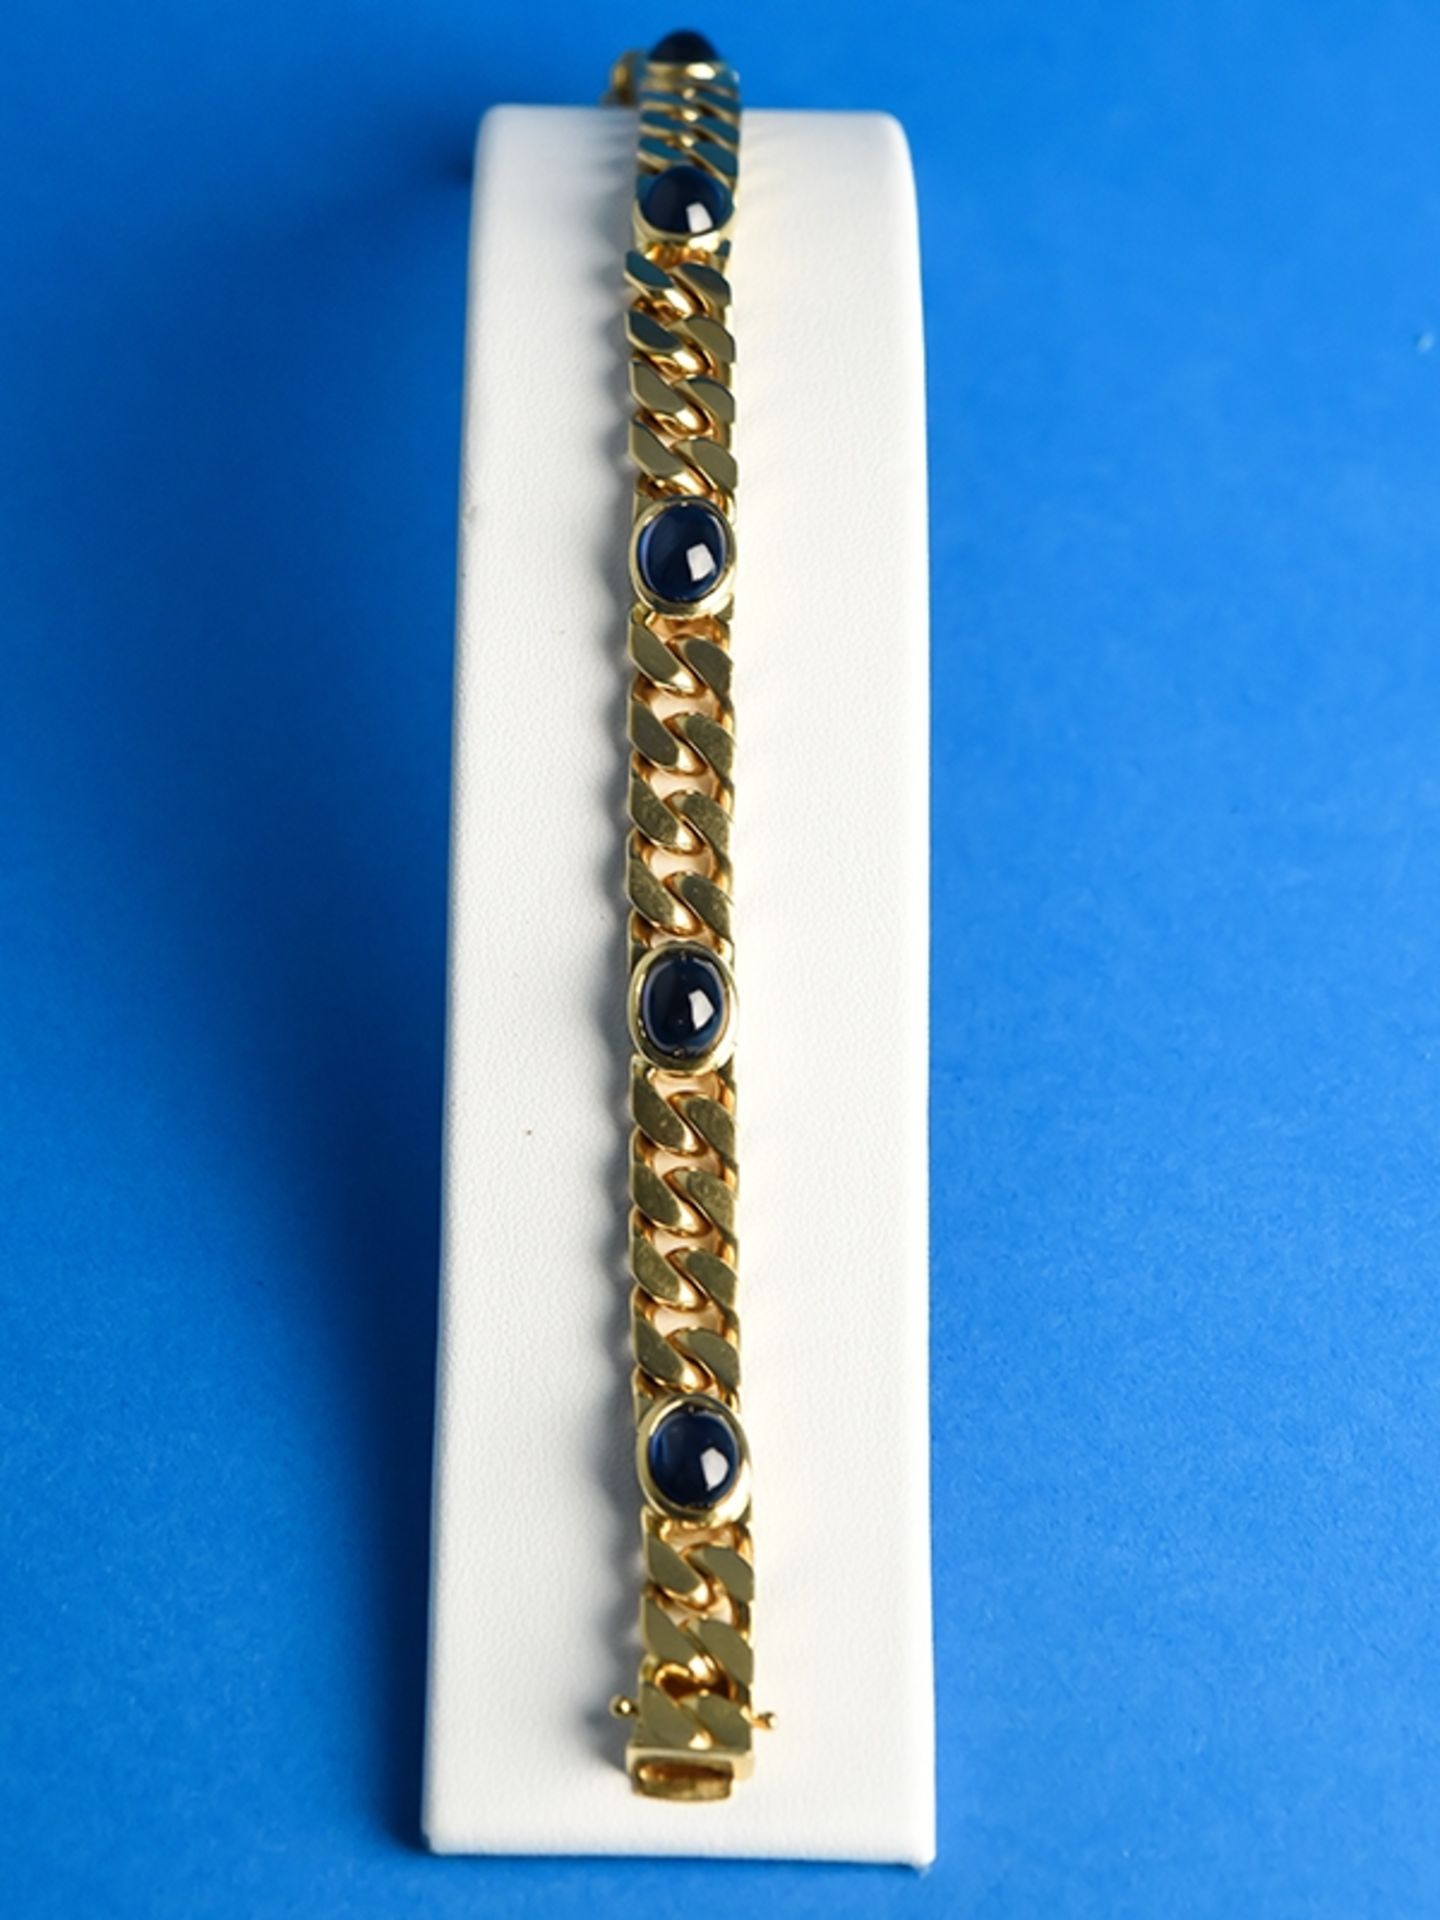 Massives Armband mit 5 Saphir-Cabochons, Goldschmiedearbeit, gestempelt AZ, 20. Jh.     750/-